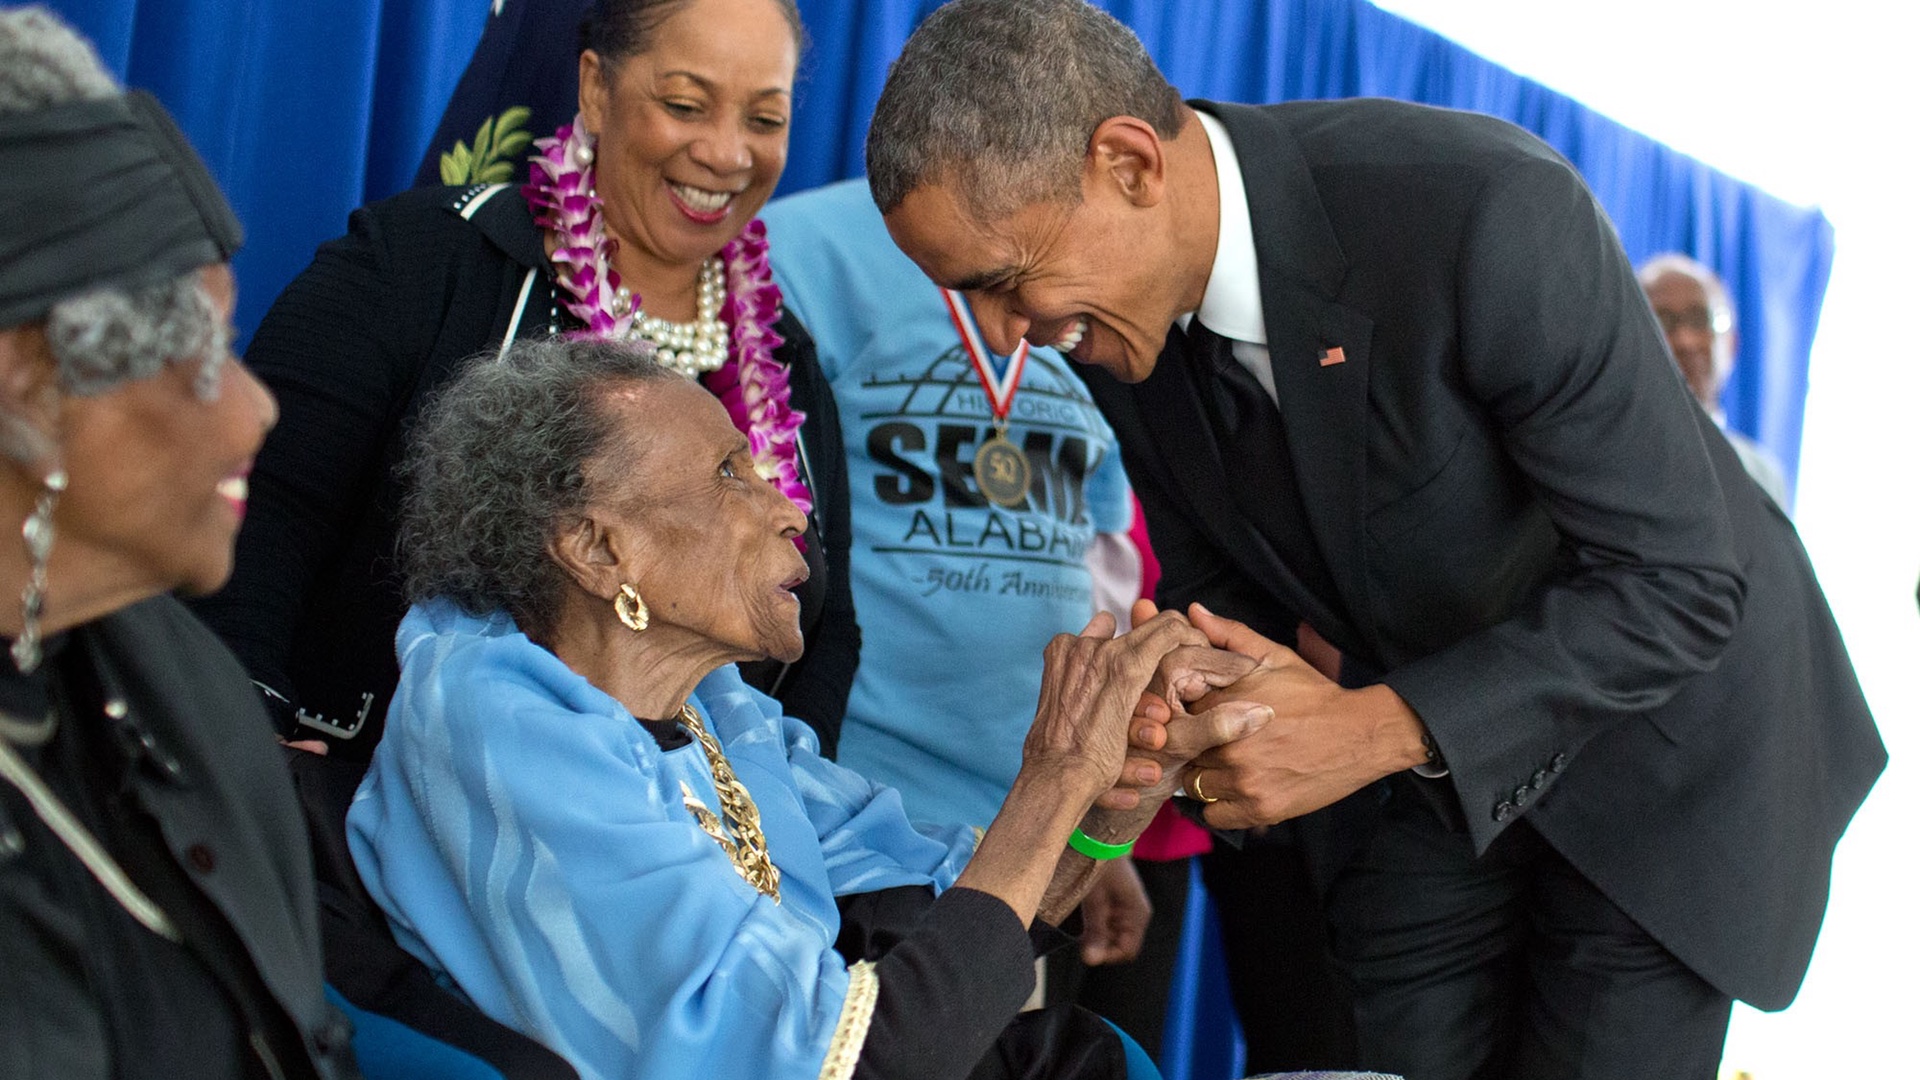 President Obama with Ameila Boyton Robinson